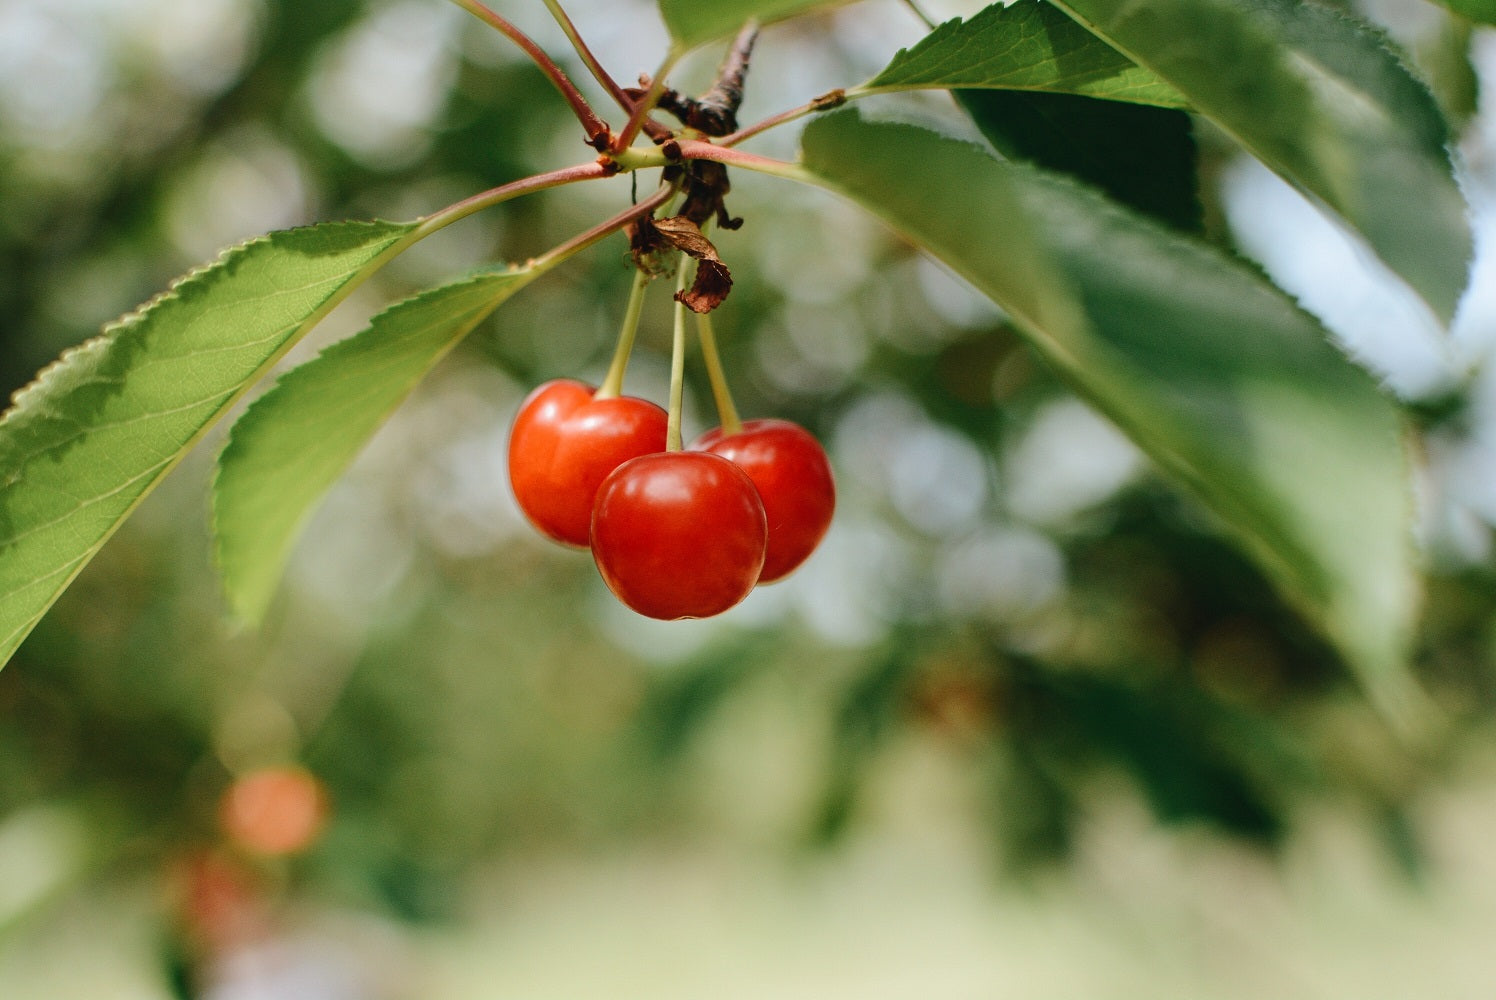 Tart cherry benefits